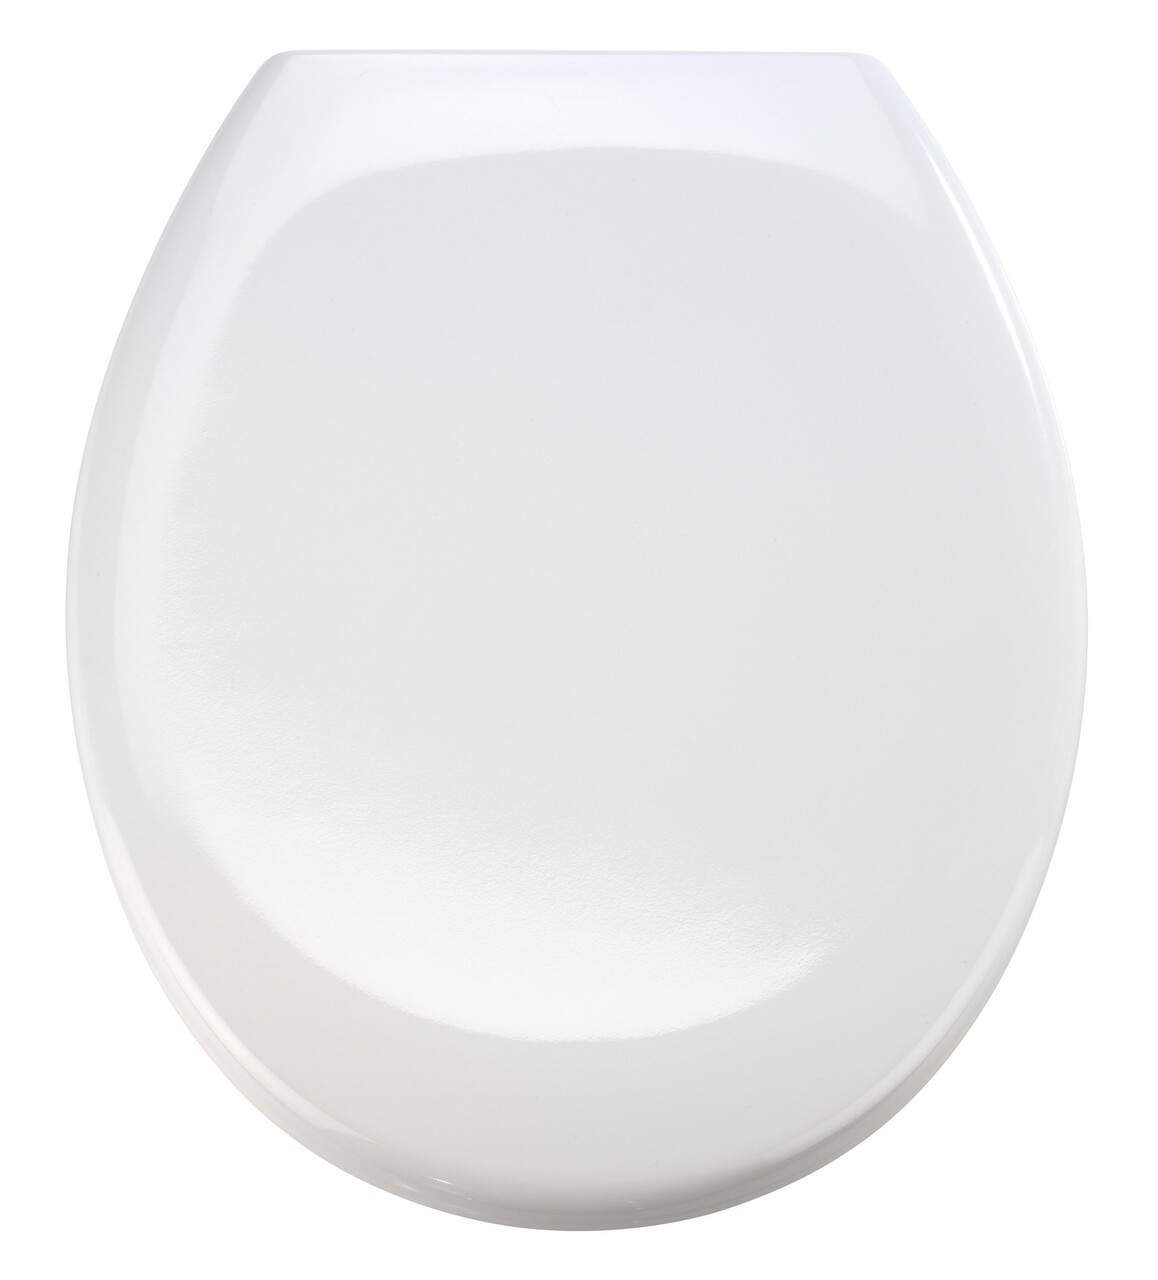 Capac de toaleta cu sistem automat de coborare, Wenko, Premium Ottana, 37.5 x 44.5 cm, duroplast, alb